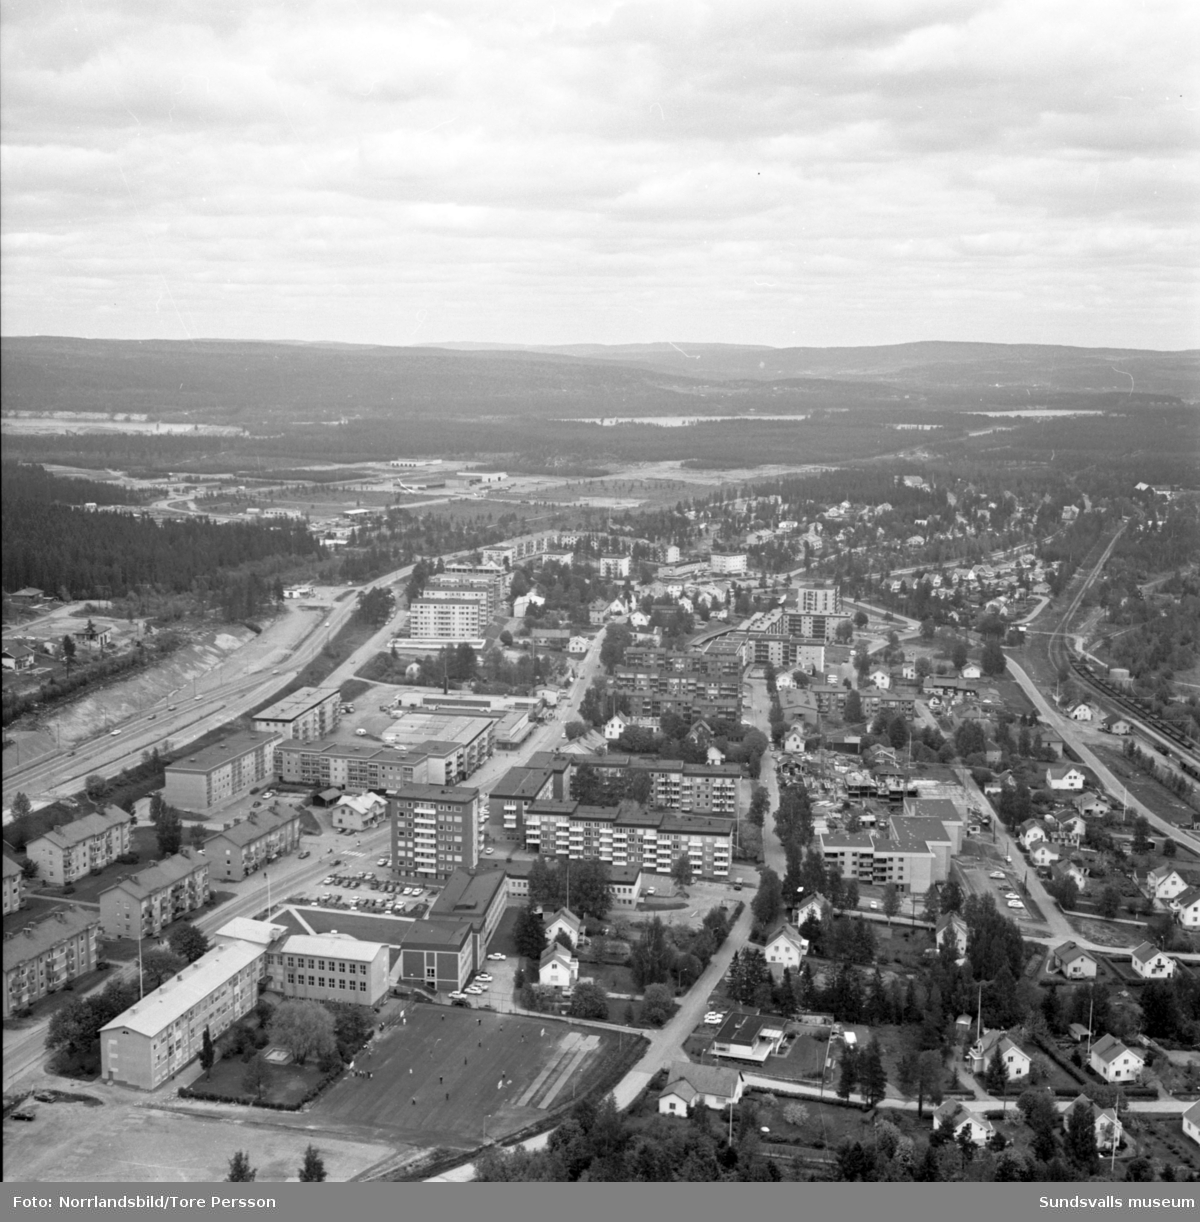 Flygfoton över Timrå med omnejd. Centrum, industriområdet, idrottsplatsen med "Grytan" och isladan, Östrandsfabriken, Vivstavarvstjärn, landsbygd.